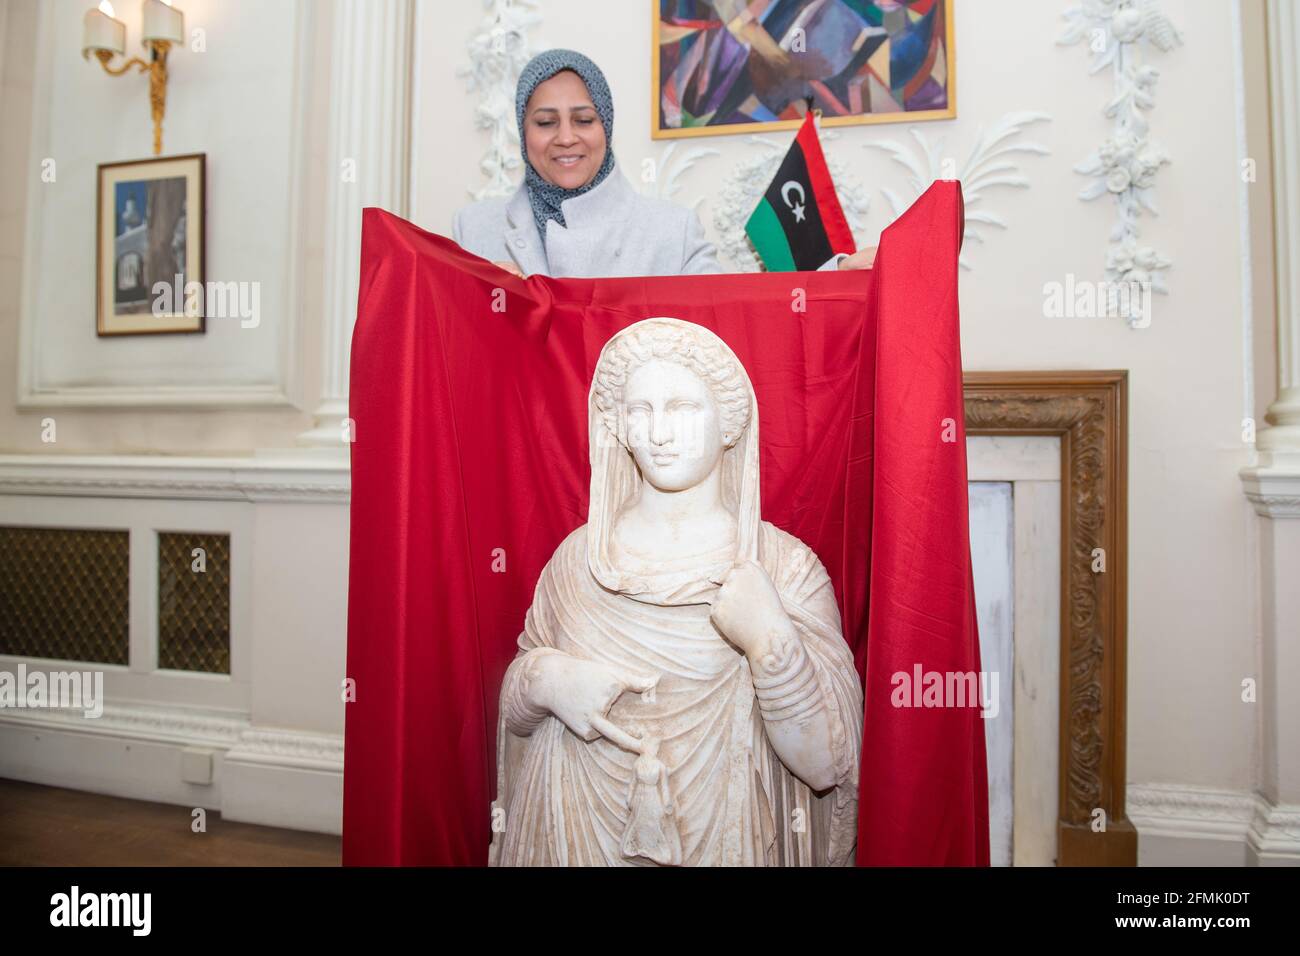 Erster Sekretär der Lybischen Botschaft, Enas Kaal, mit der Grabstatue aus dem zweiten Jahrhundert, die Demeter oder Persephone in der libyschen Botschaft im Zentrum von London darstellt. Die Statue wird mit Hilfe der Regierung, der libyschen Botschaft und des British Museum zurückgegeben, nachdem sie vom HMRC beschlagnahmt wurde, als sie von einem Händler illegal aus Libyen nach Großbritannien gebracht wurde. Ausgabedatum: Montag, 10. Mai 2021. Stockfoto